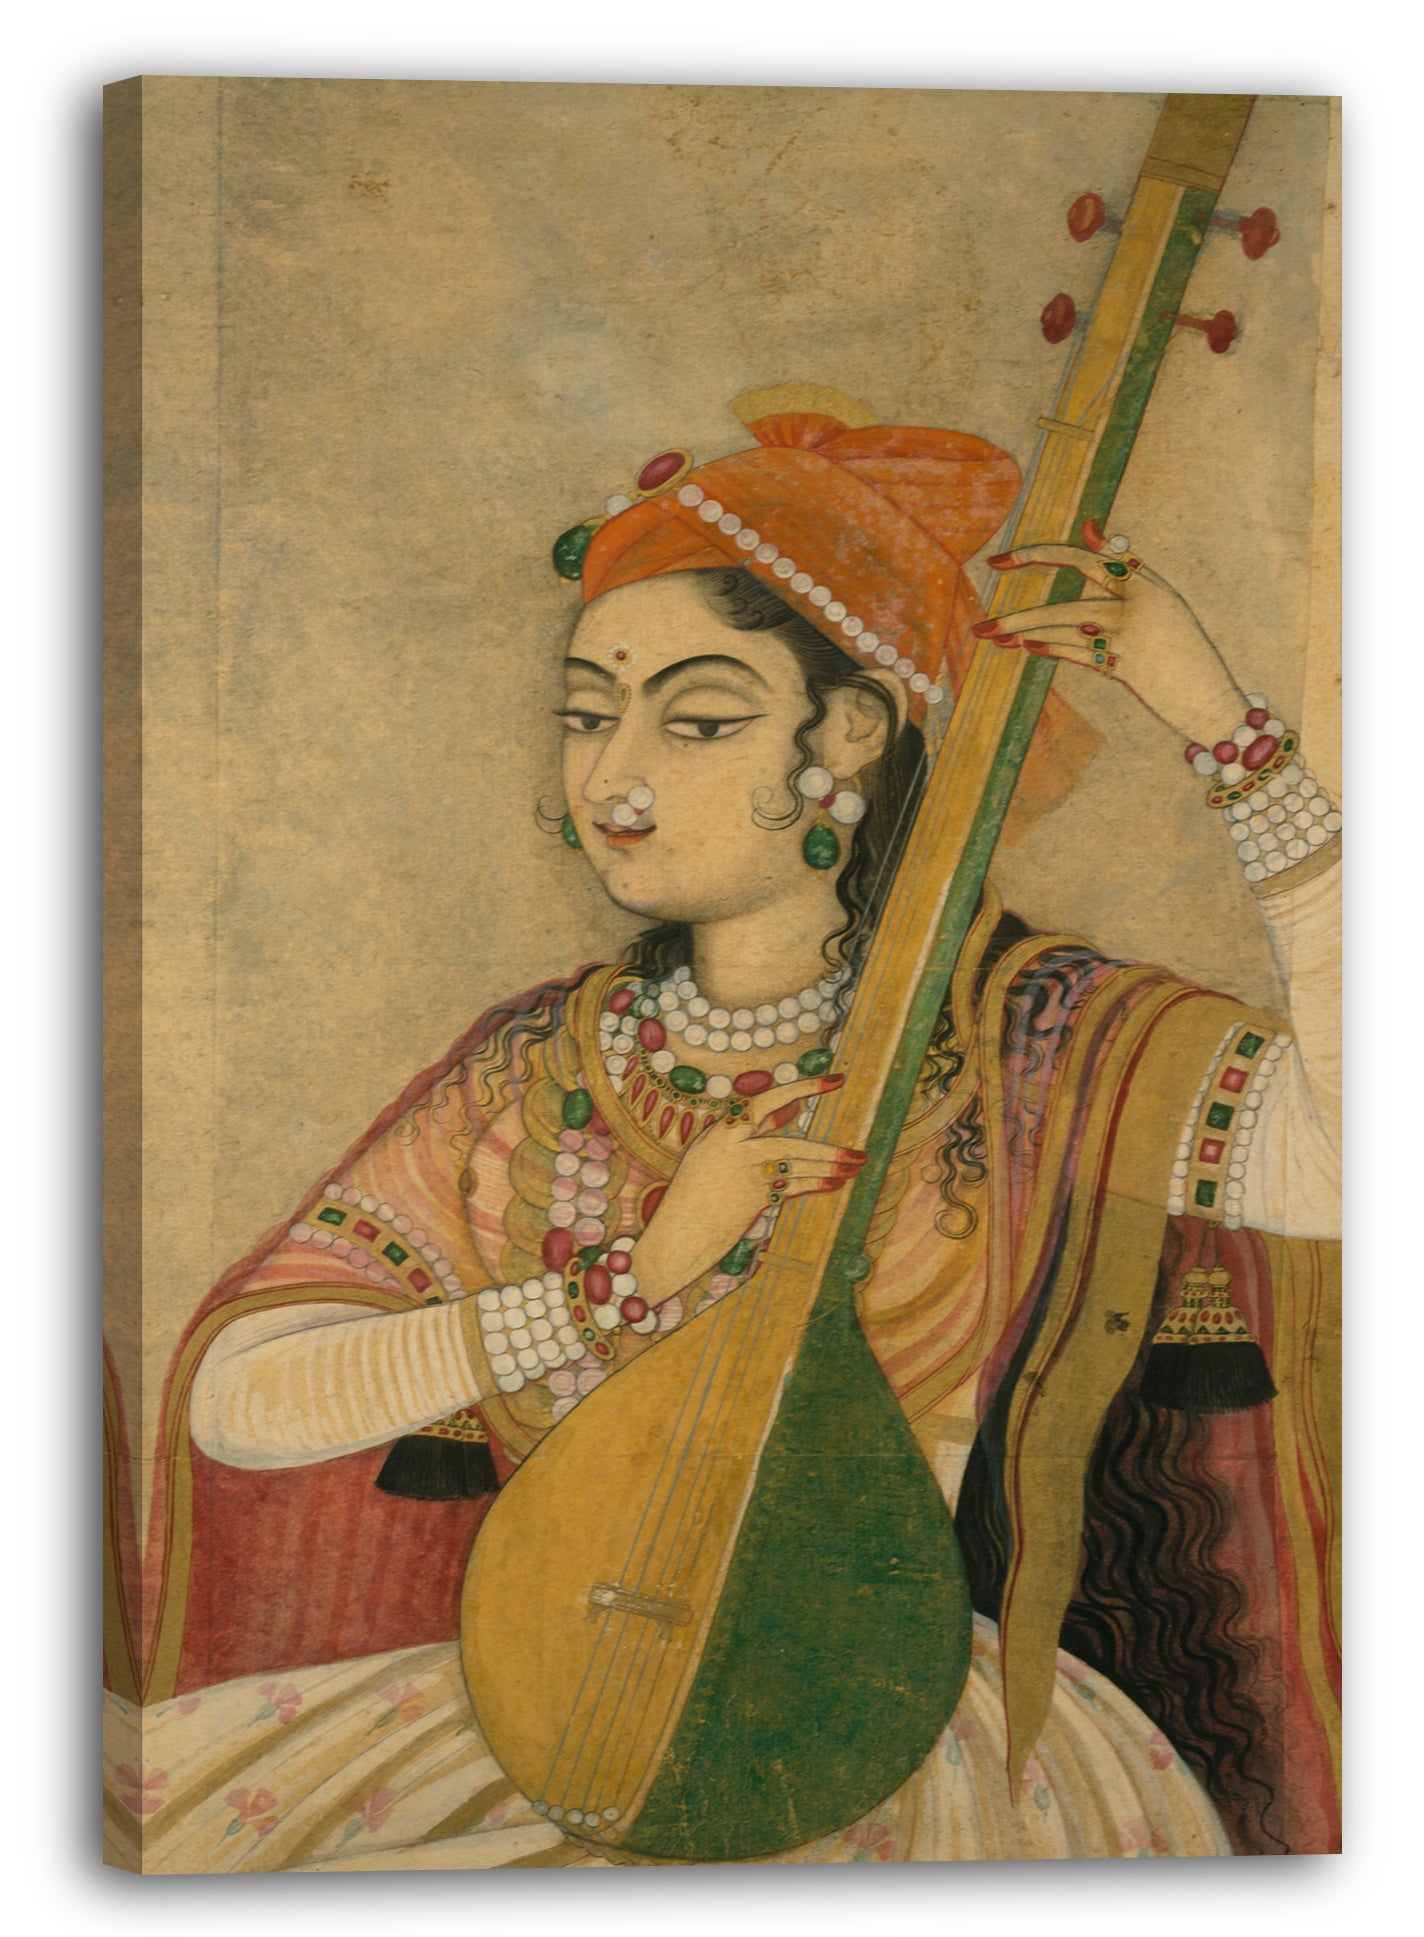 Leinwandbild ca. 1735 - Eine Dame spielt die Tanpura